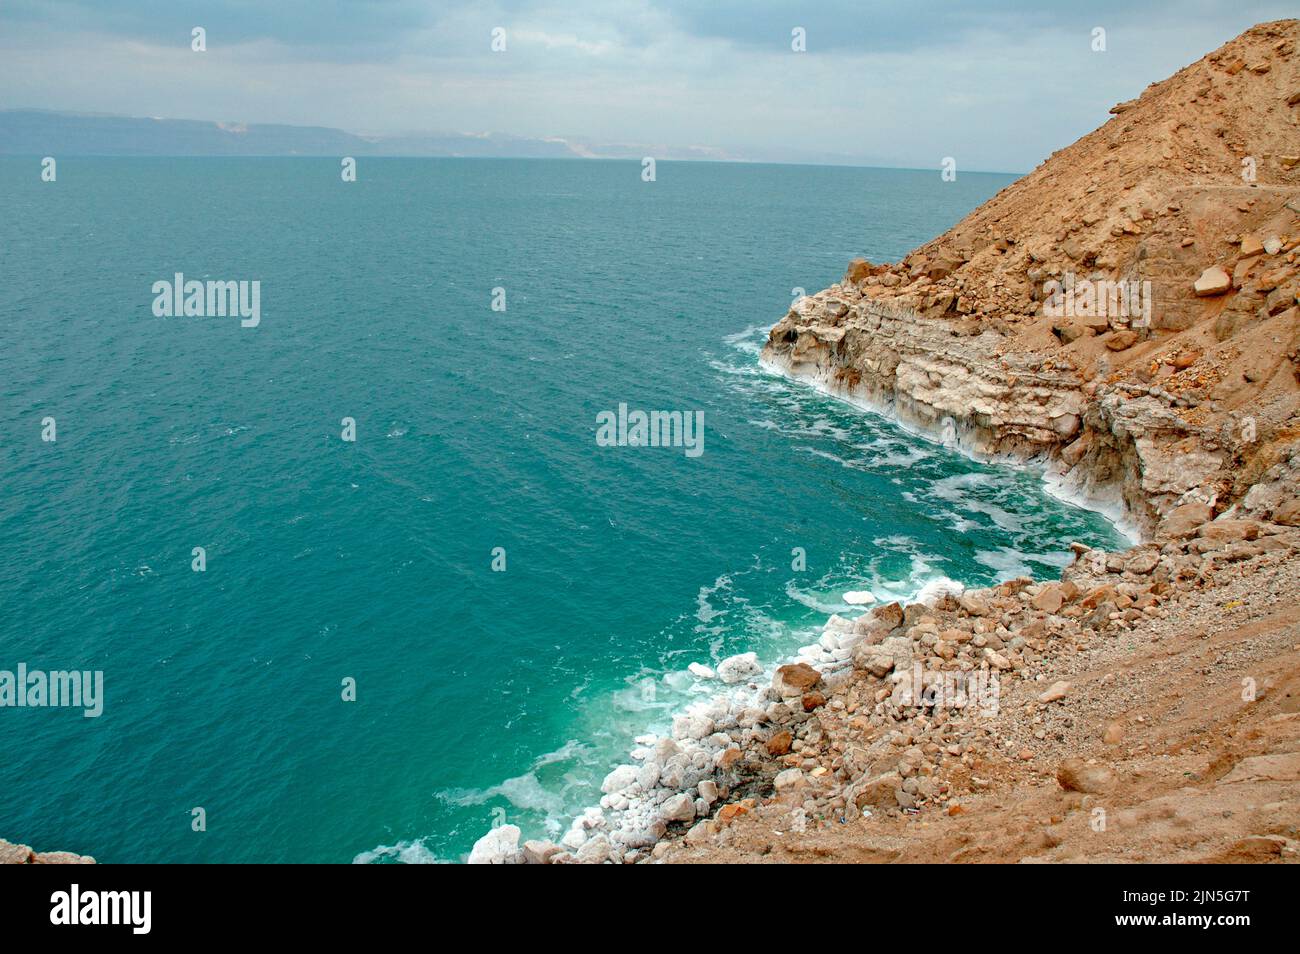 Jordania, el Mar Muerto Foto de stock